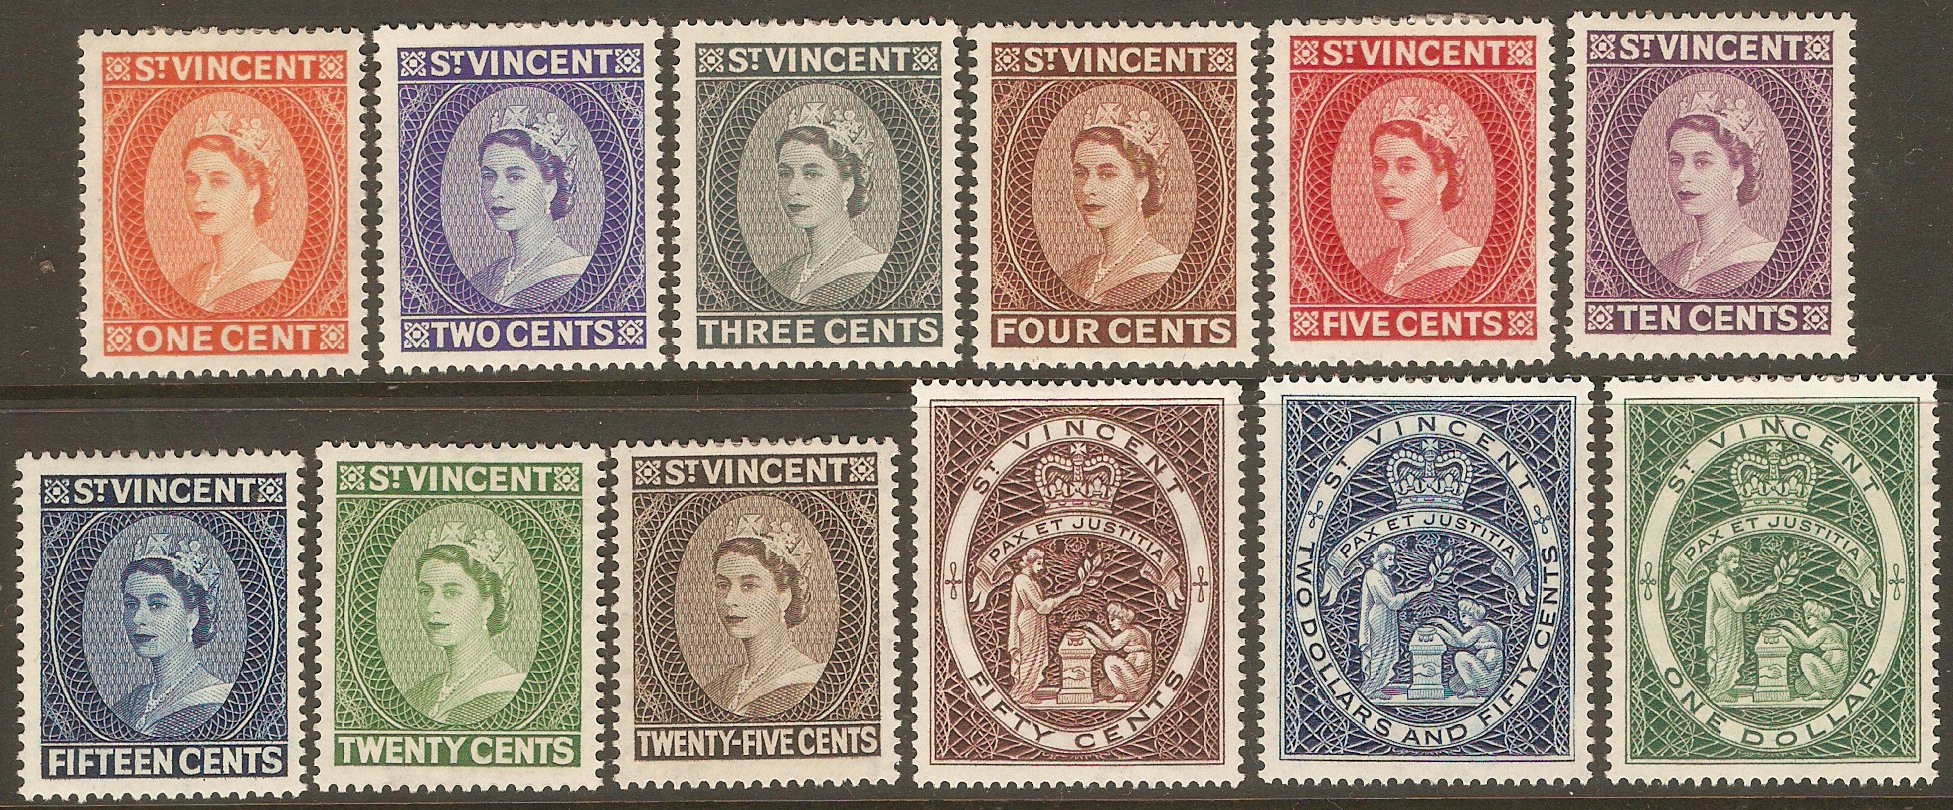 St Vincent 1955 Queen Elizabeth II definitives set. SG189-SG200.